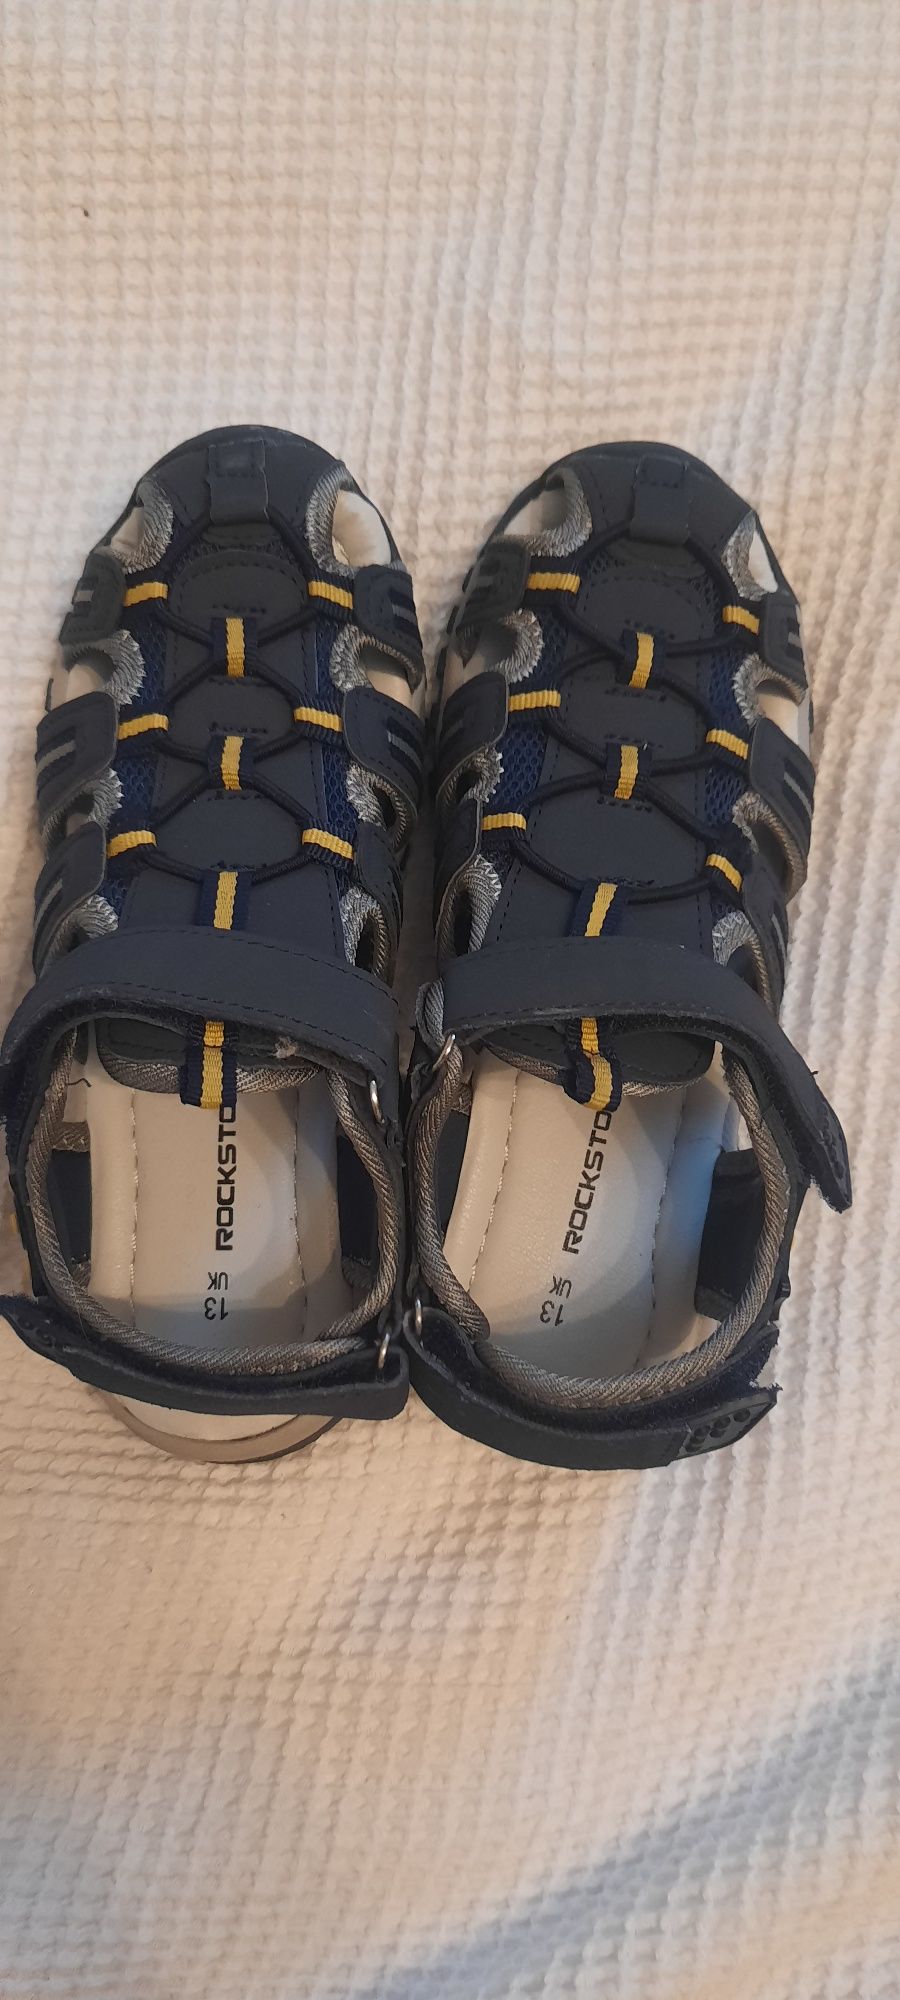 Nowe sandalki chlopiece 31 dl wkladki 20/ 31 trekingowe Rockstorm